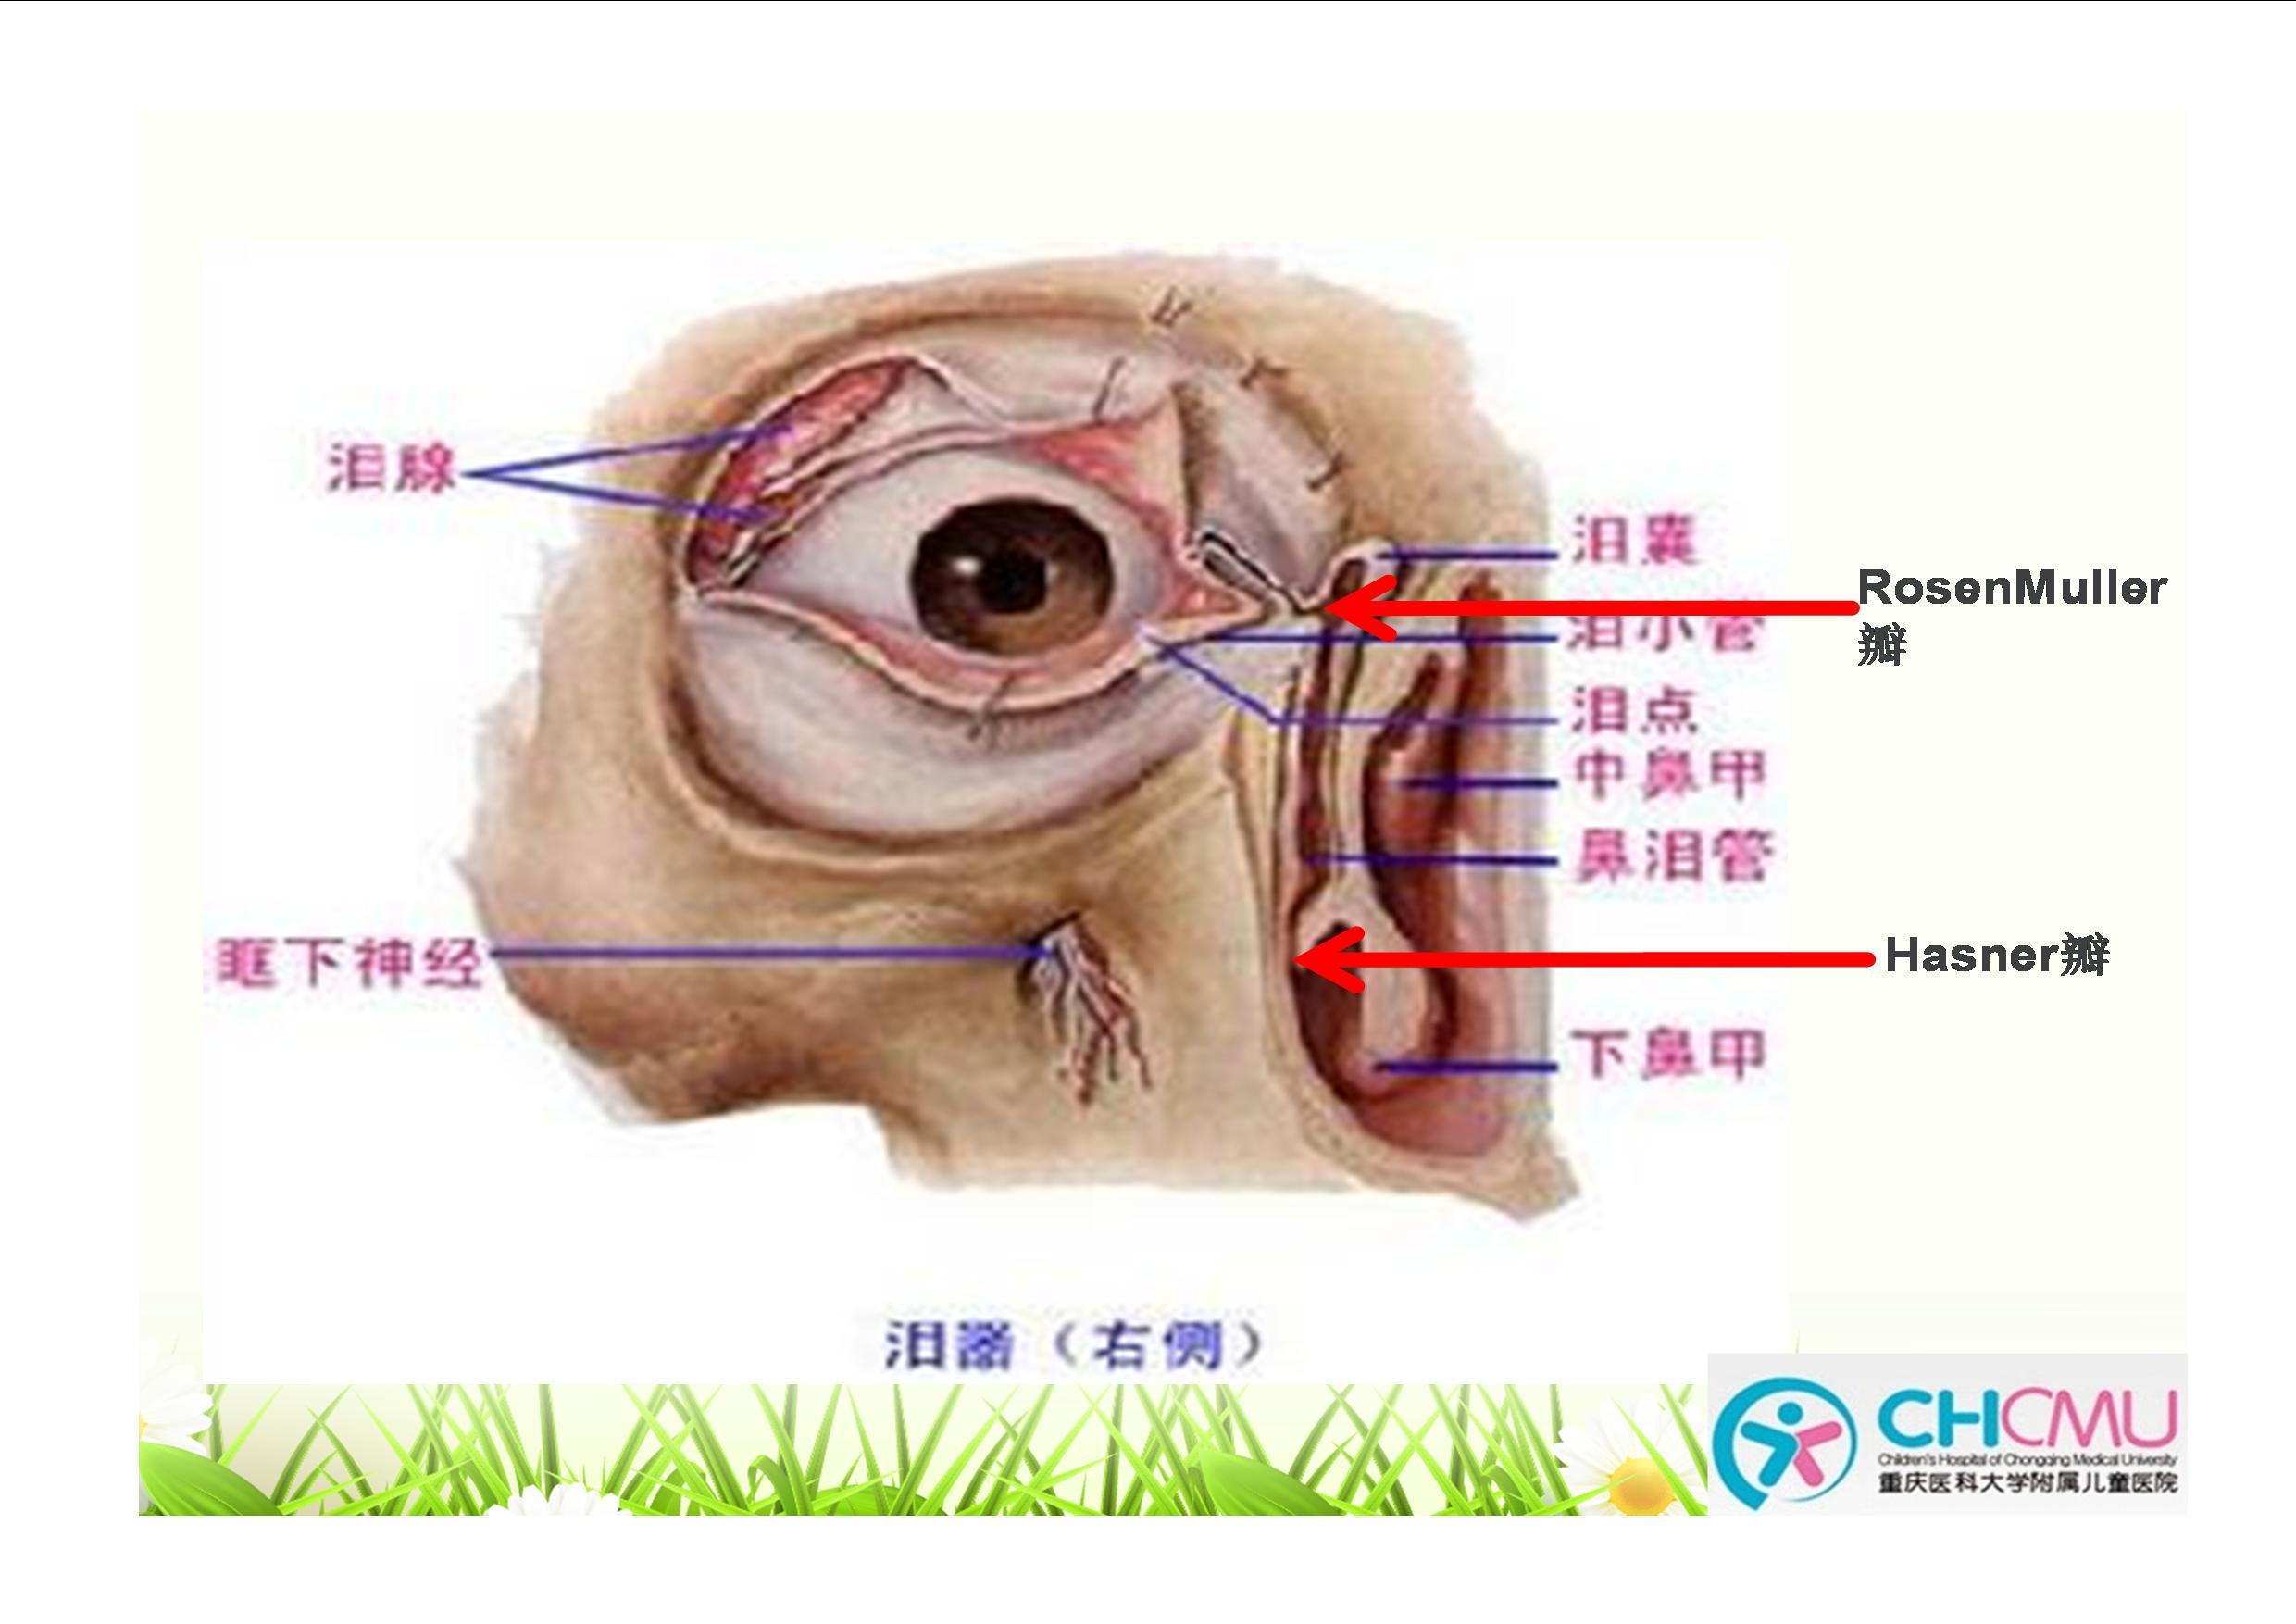 位于鼻泪管末端的hasner瓣膜未破裂和位于泪总管开口处的rosenmuller